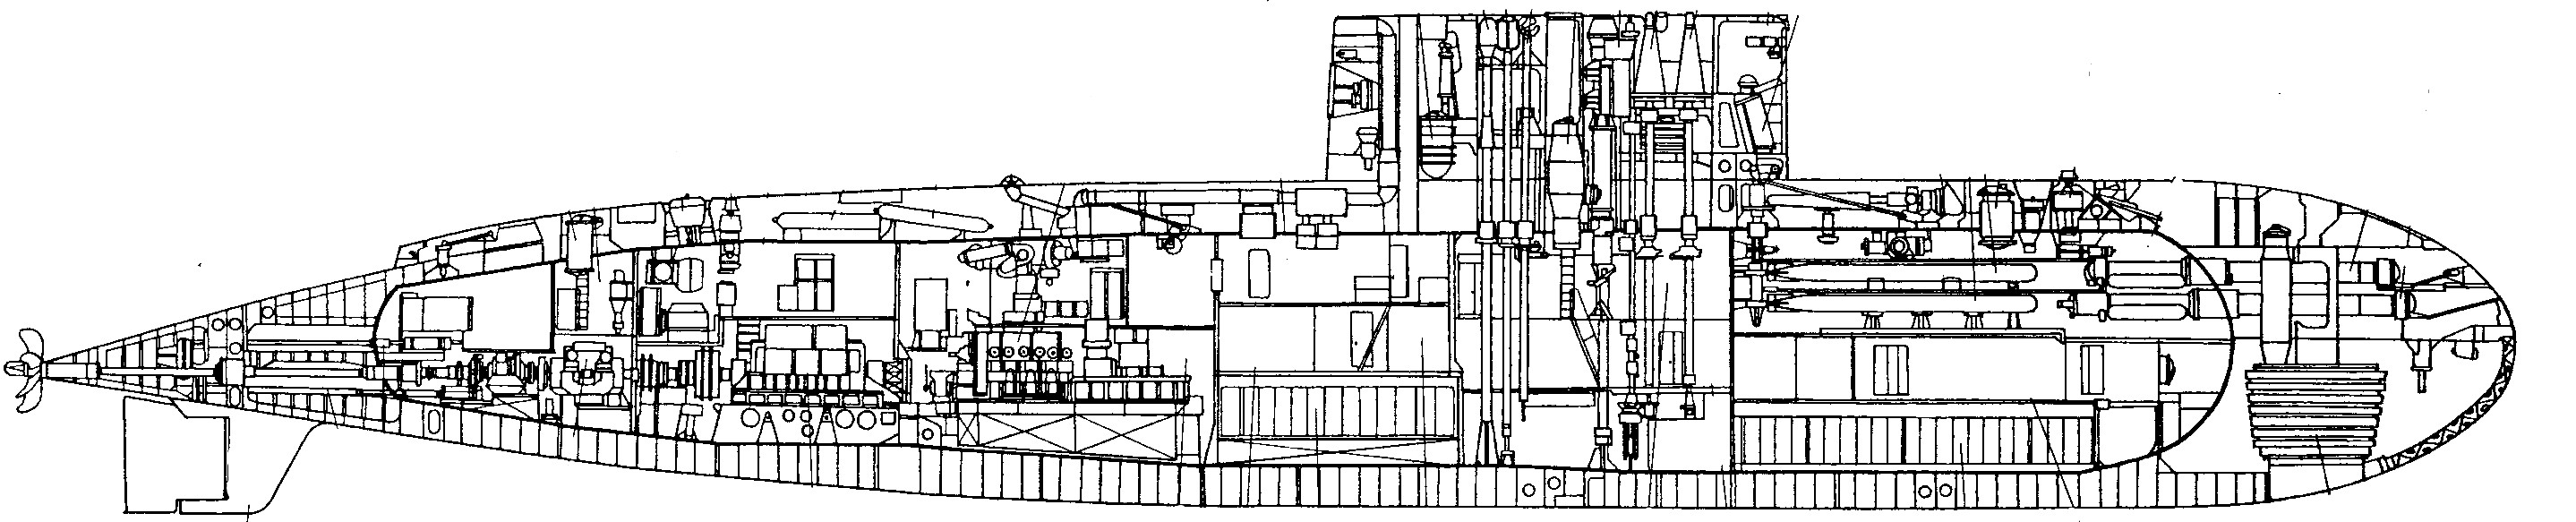 基洛級潛艇初期型線圖